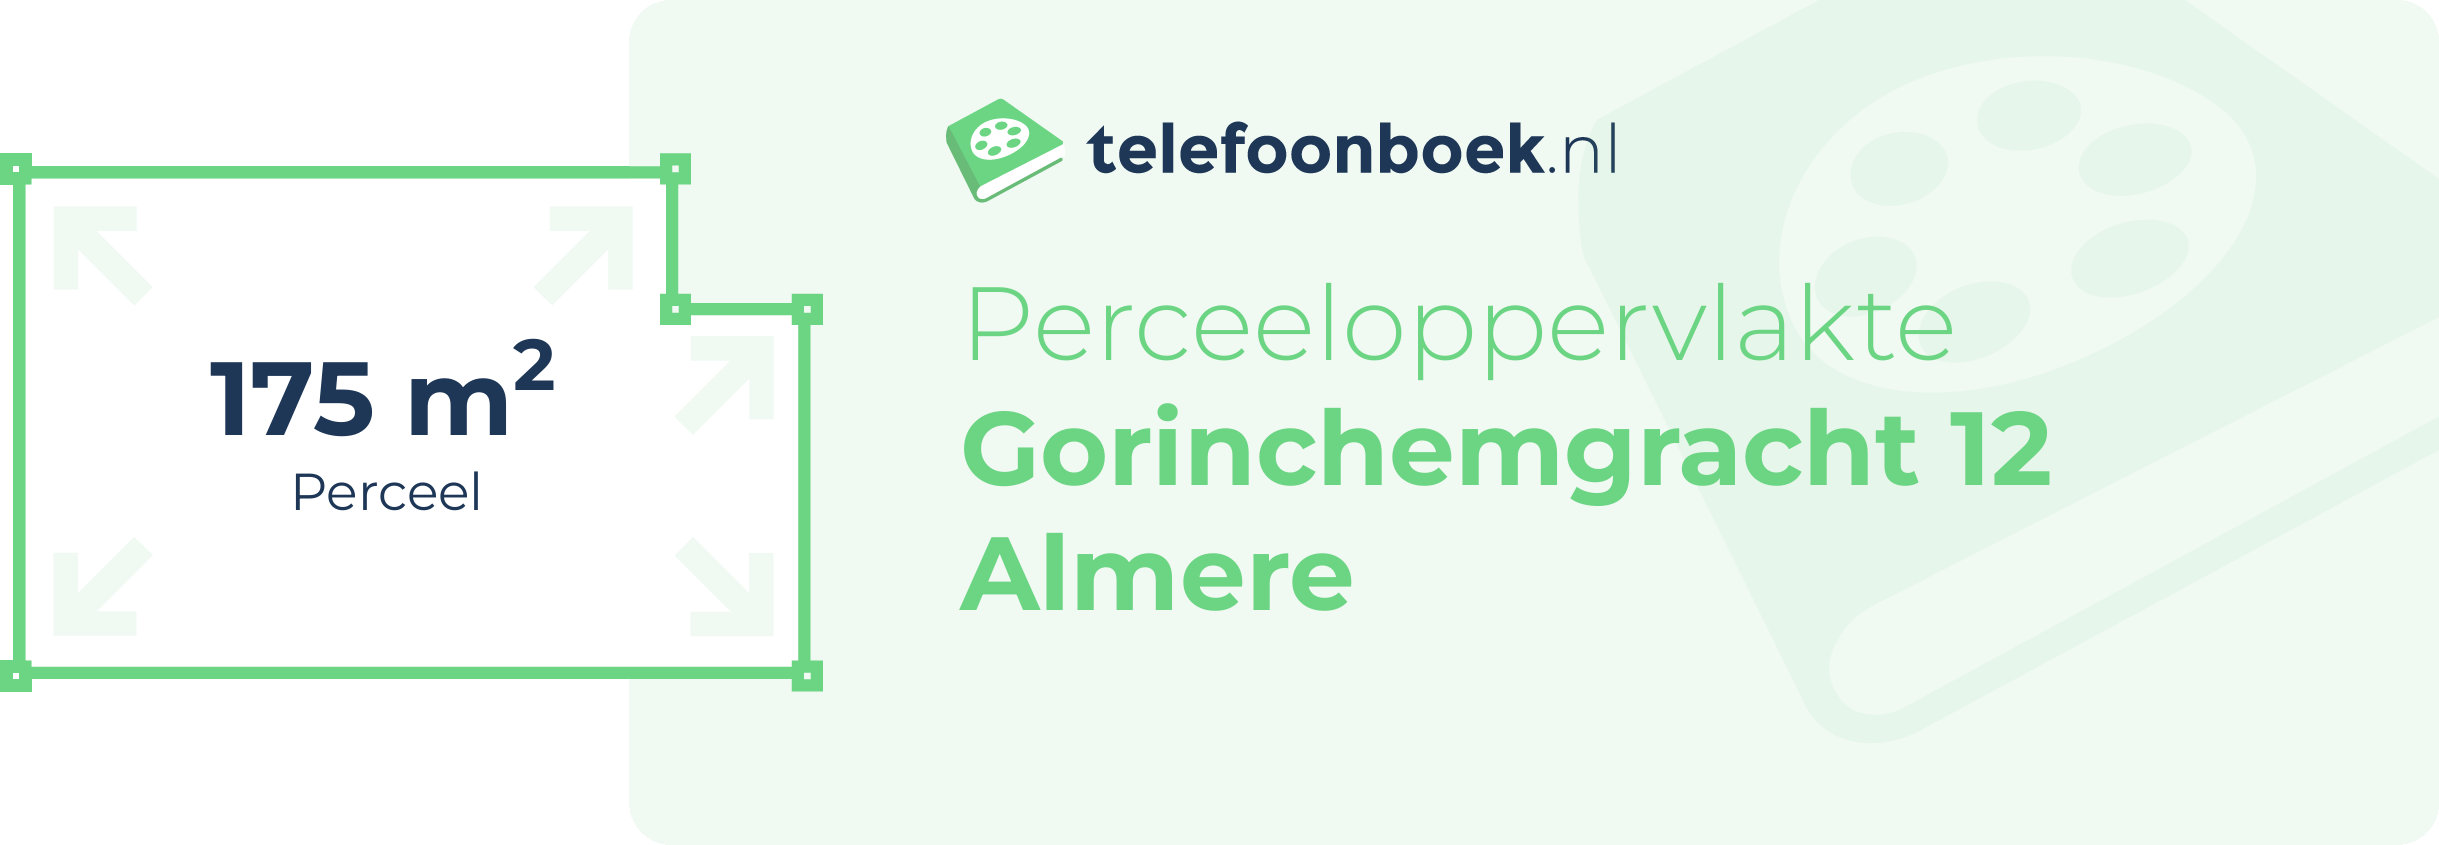 Perceeloppervlakte Gorinchemgracht 12 Almere